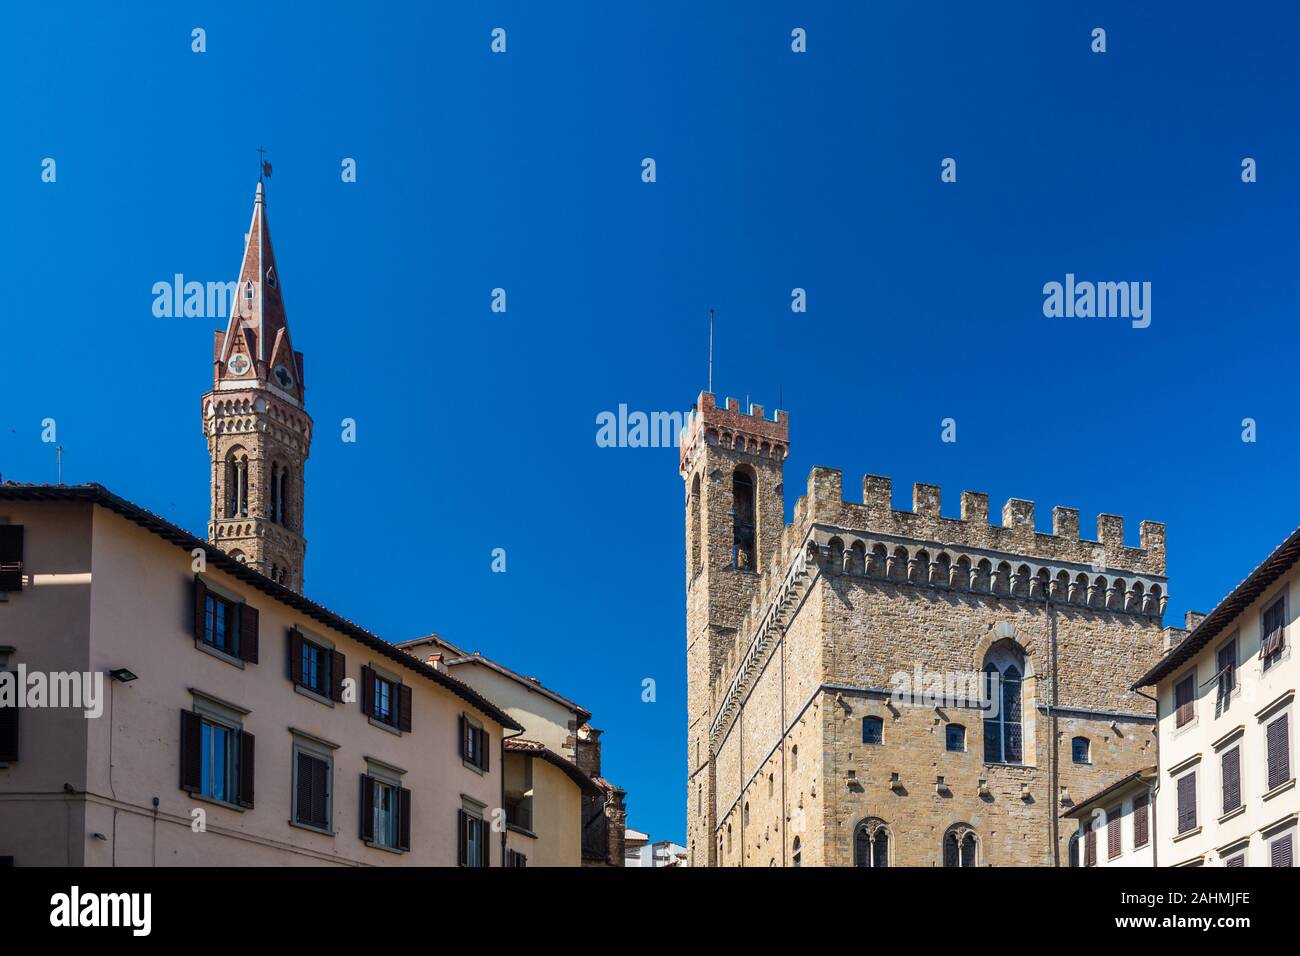 Florenz, Italien - 5. Juni 2019: Das Bargello, auch bekannt als der Palazzo del Bargello, Museo Nazionale del Bargello, Palazzo del Popolo (Palast der Stockfoto